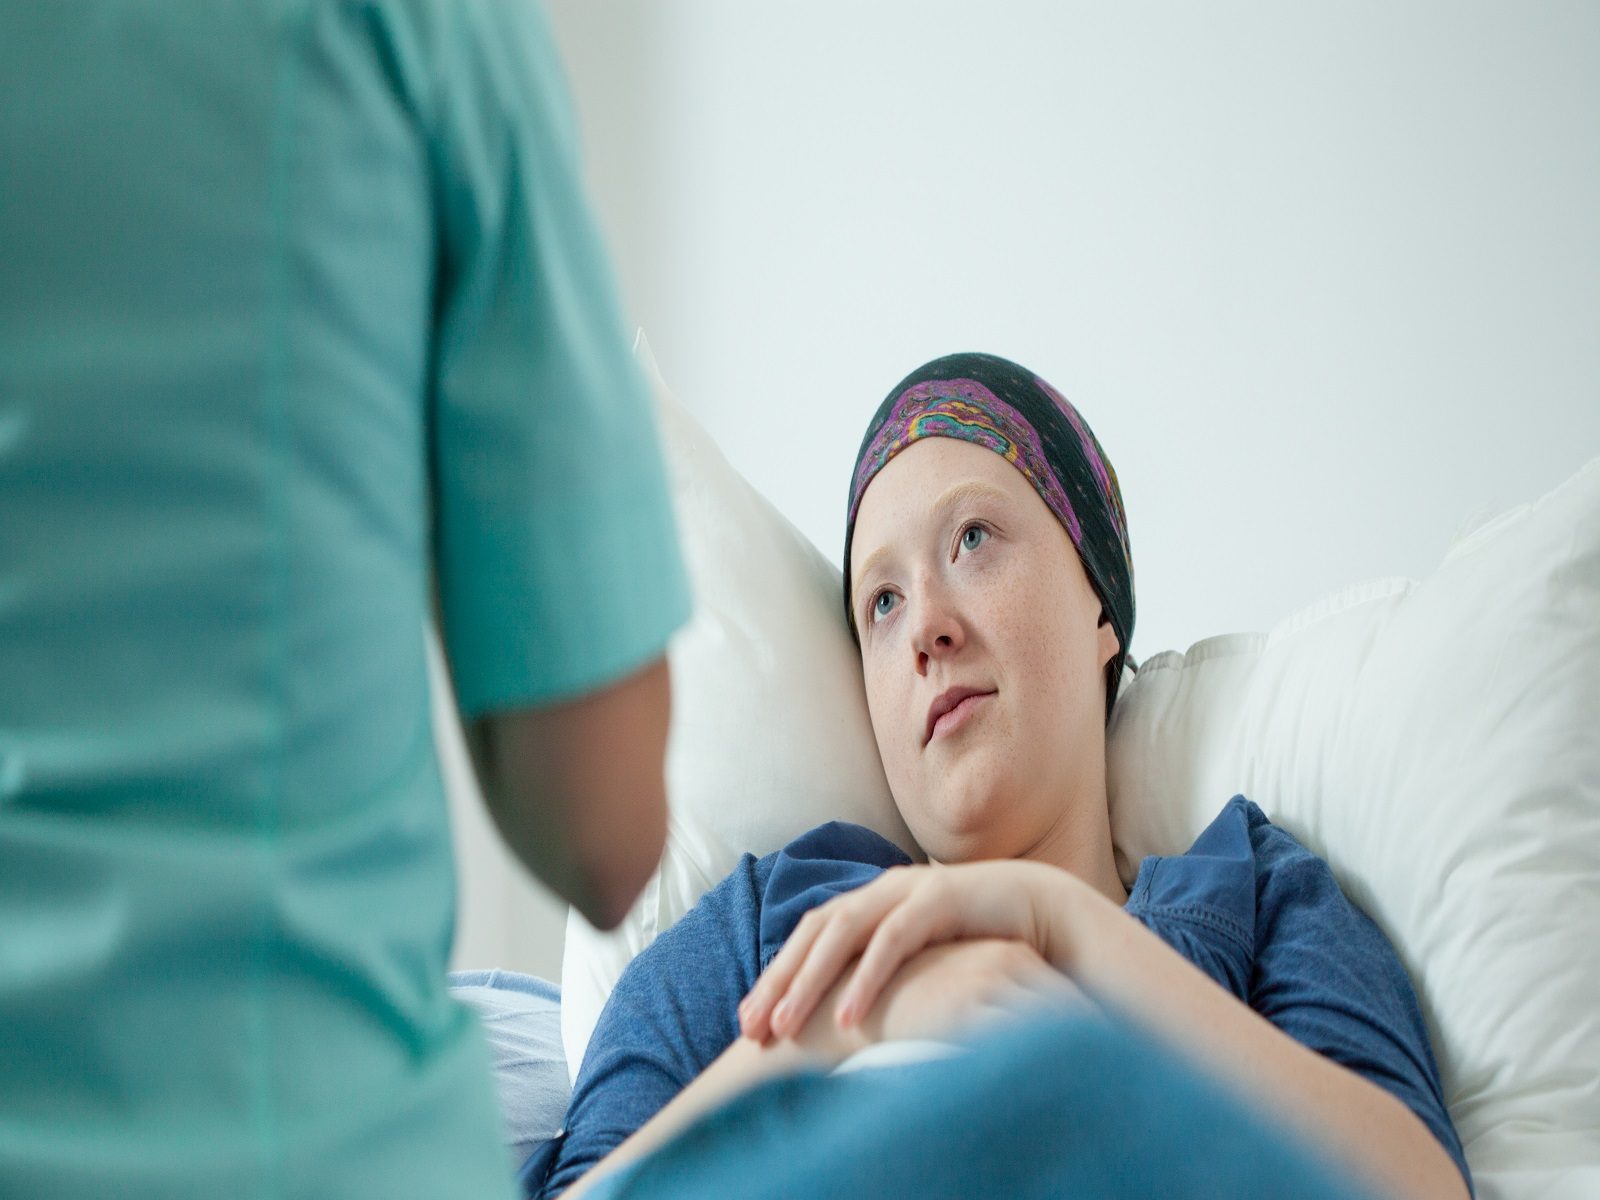 कैंसर के एडवांस्ड स्टेज वाले भी बहुत से मरीज सर्जरी नहीं करा पाए, जबकि उन्हें तत्काल जरूरत थी. (प्रतीकात्मक फोटो- Shutterstock)